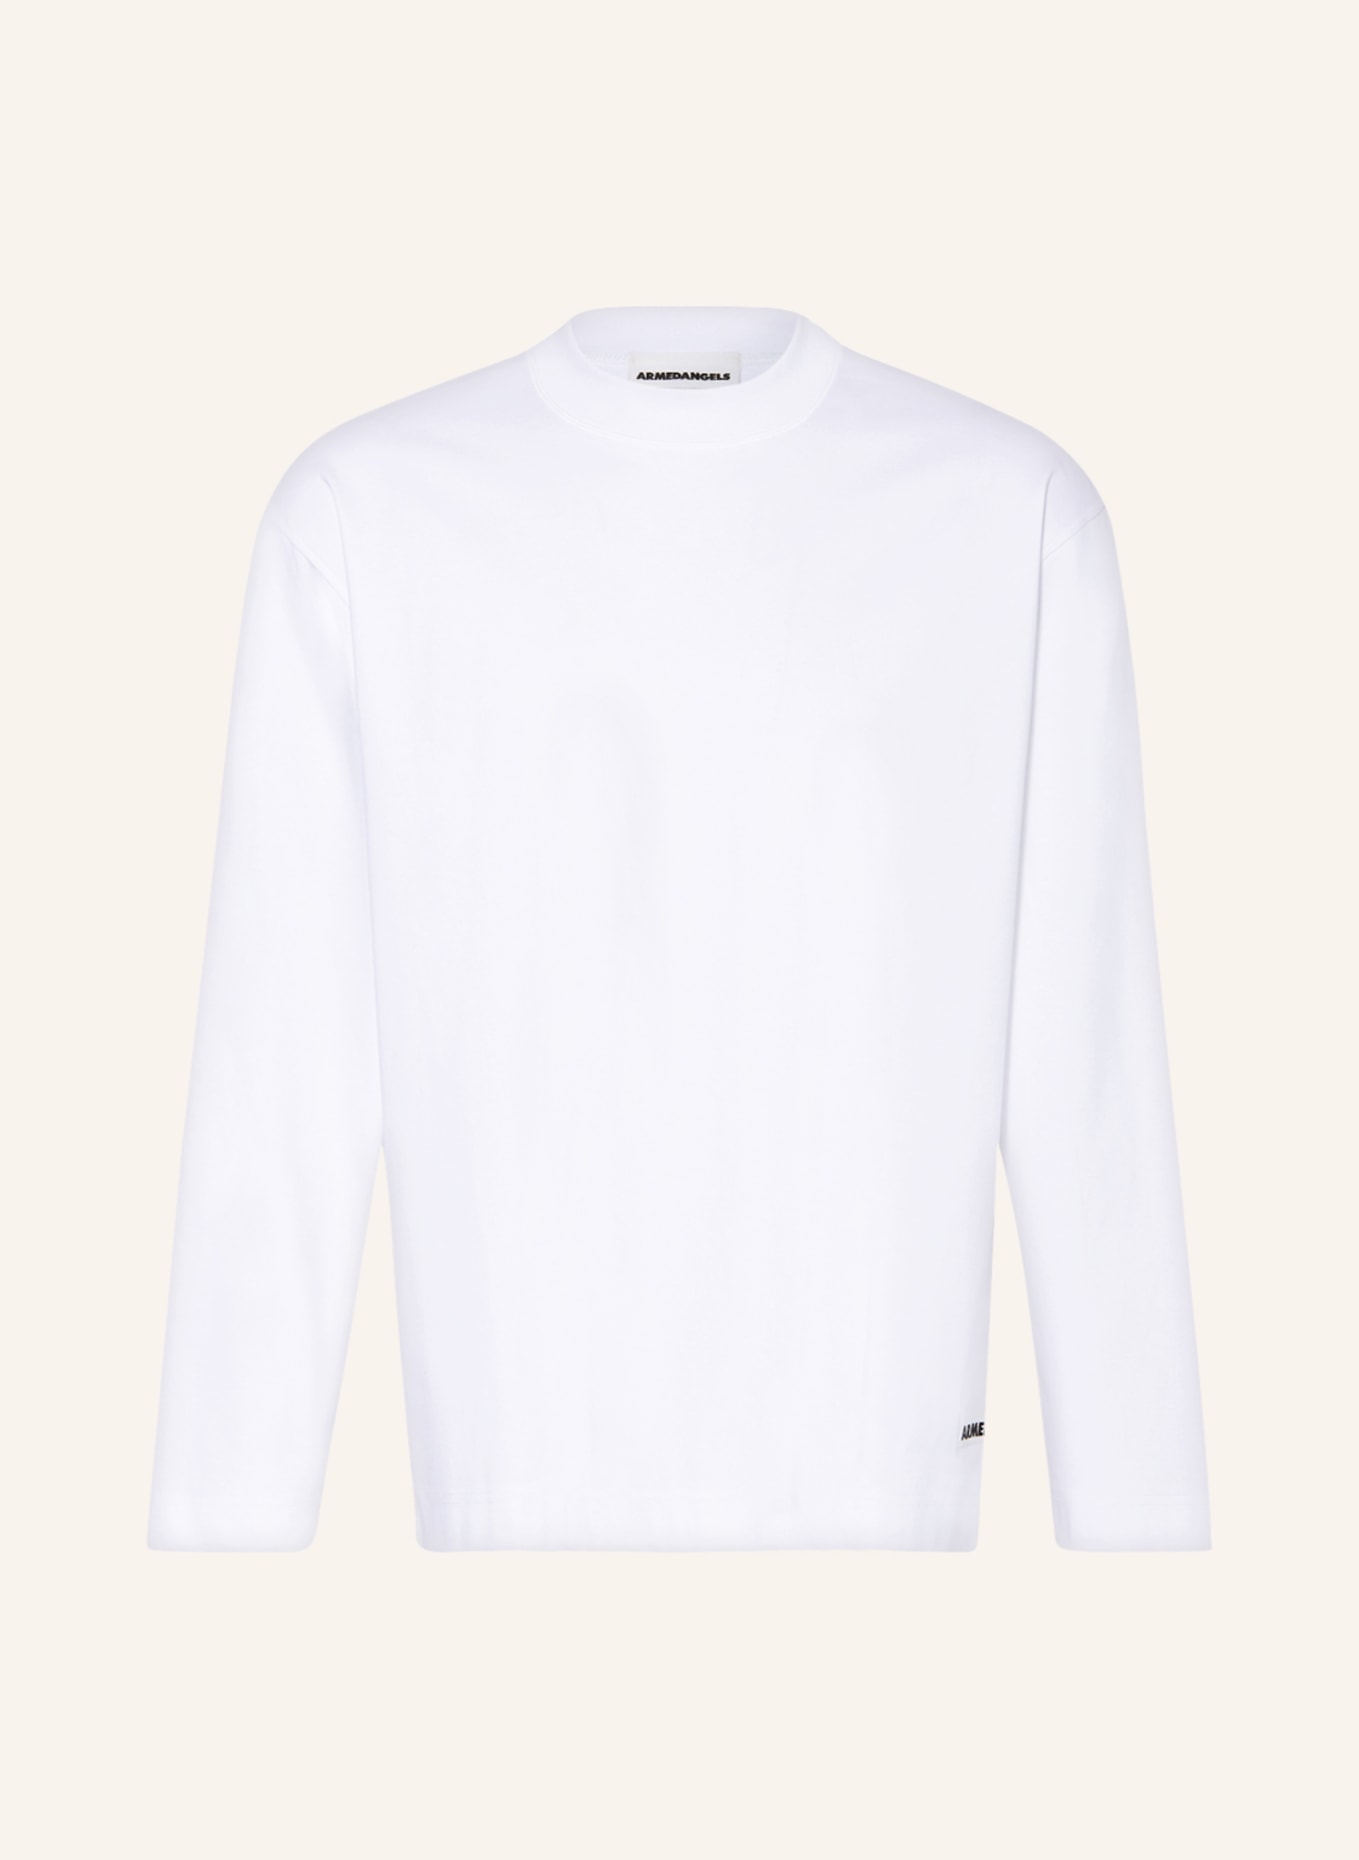 ARMEDANGELS Long sleeve shirt VAARES, Color: WHITE (Image 1)